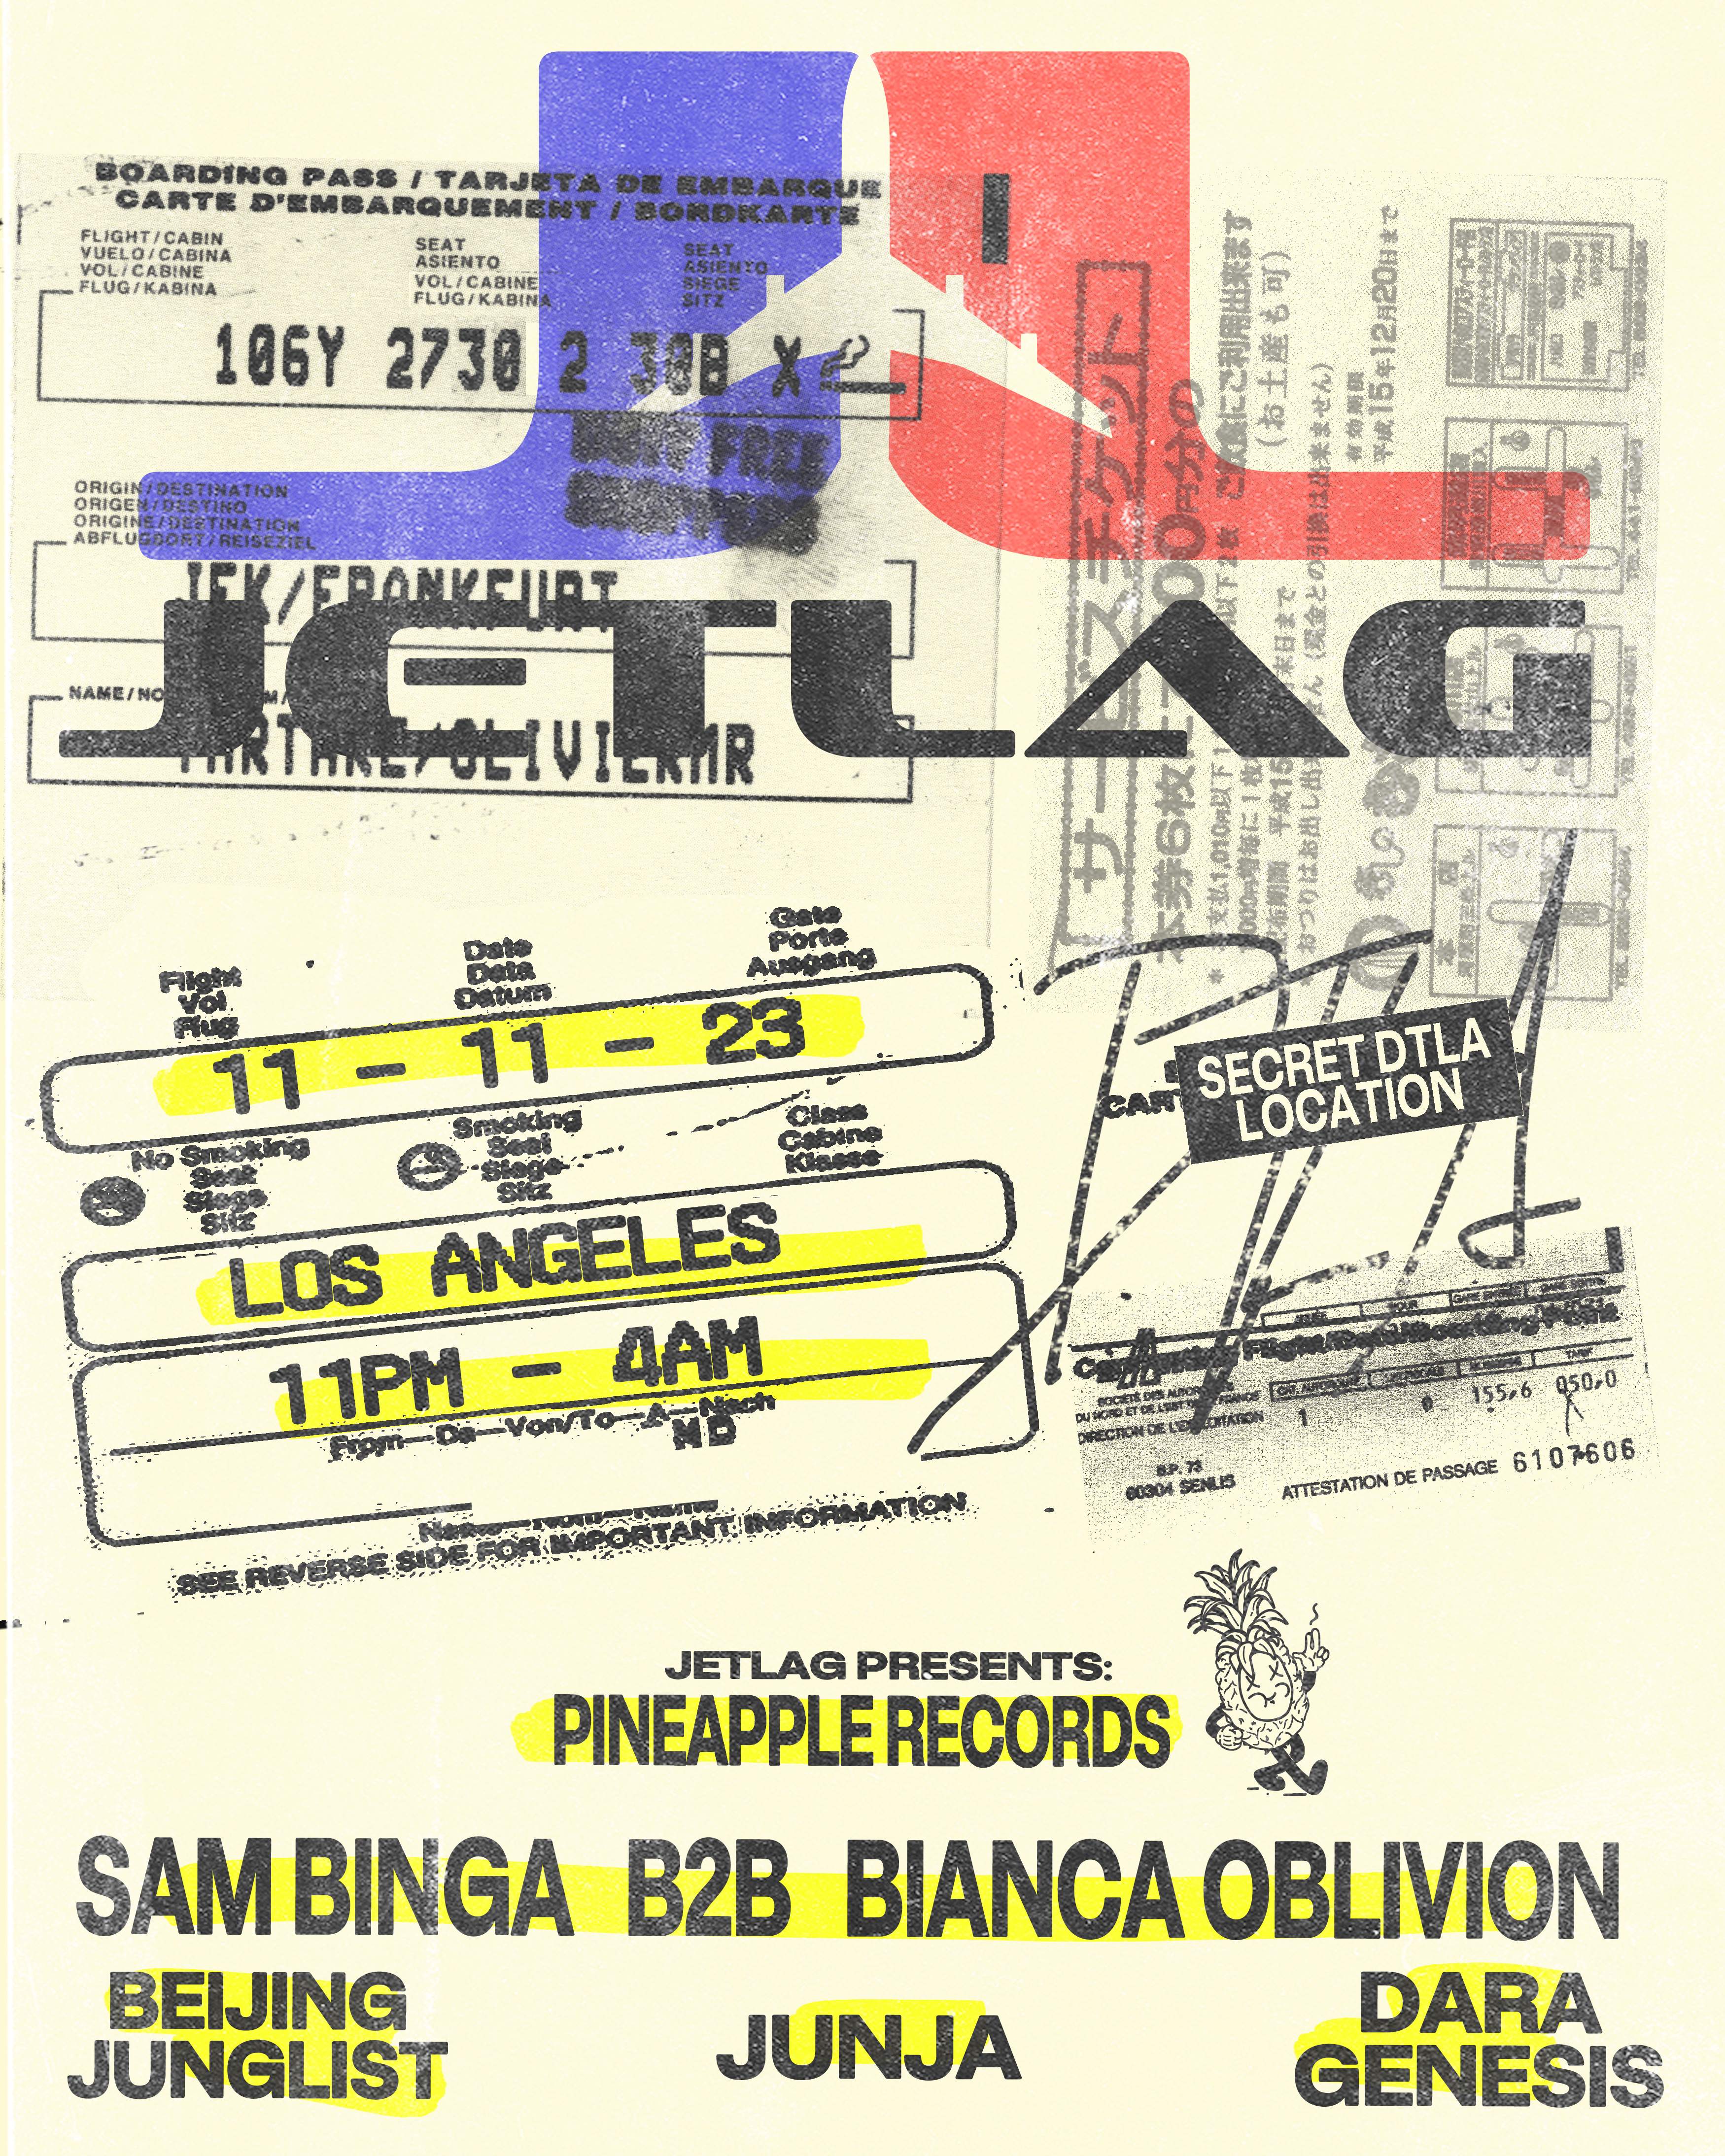 Jetlag 014: Sam Binga b2b Bianca Oblivion [Jetlag presents: Pineapple Records] - フライヤー表